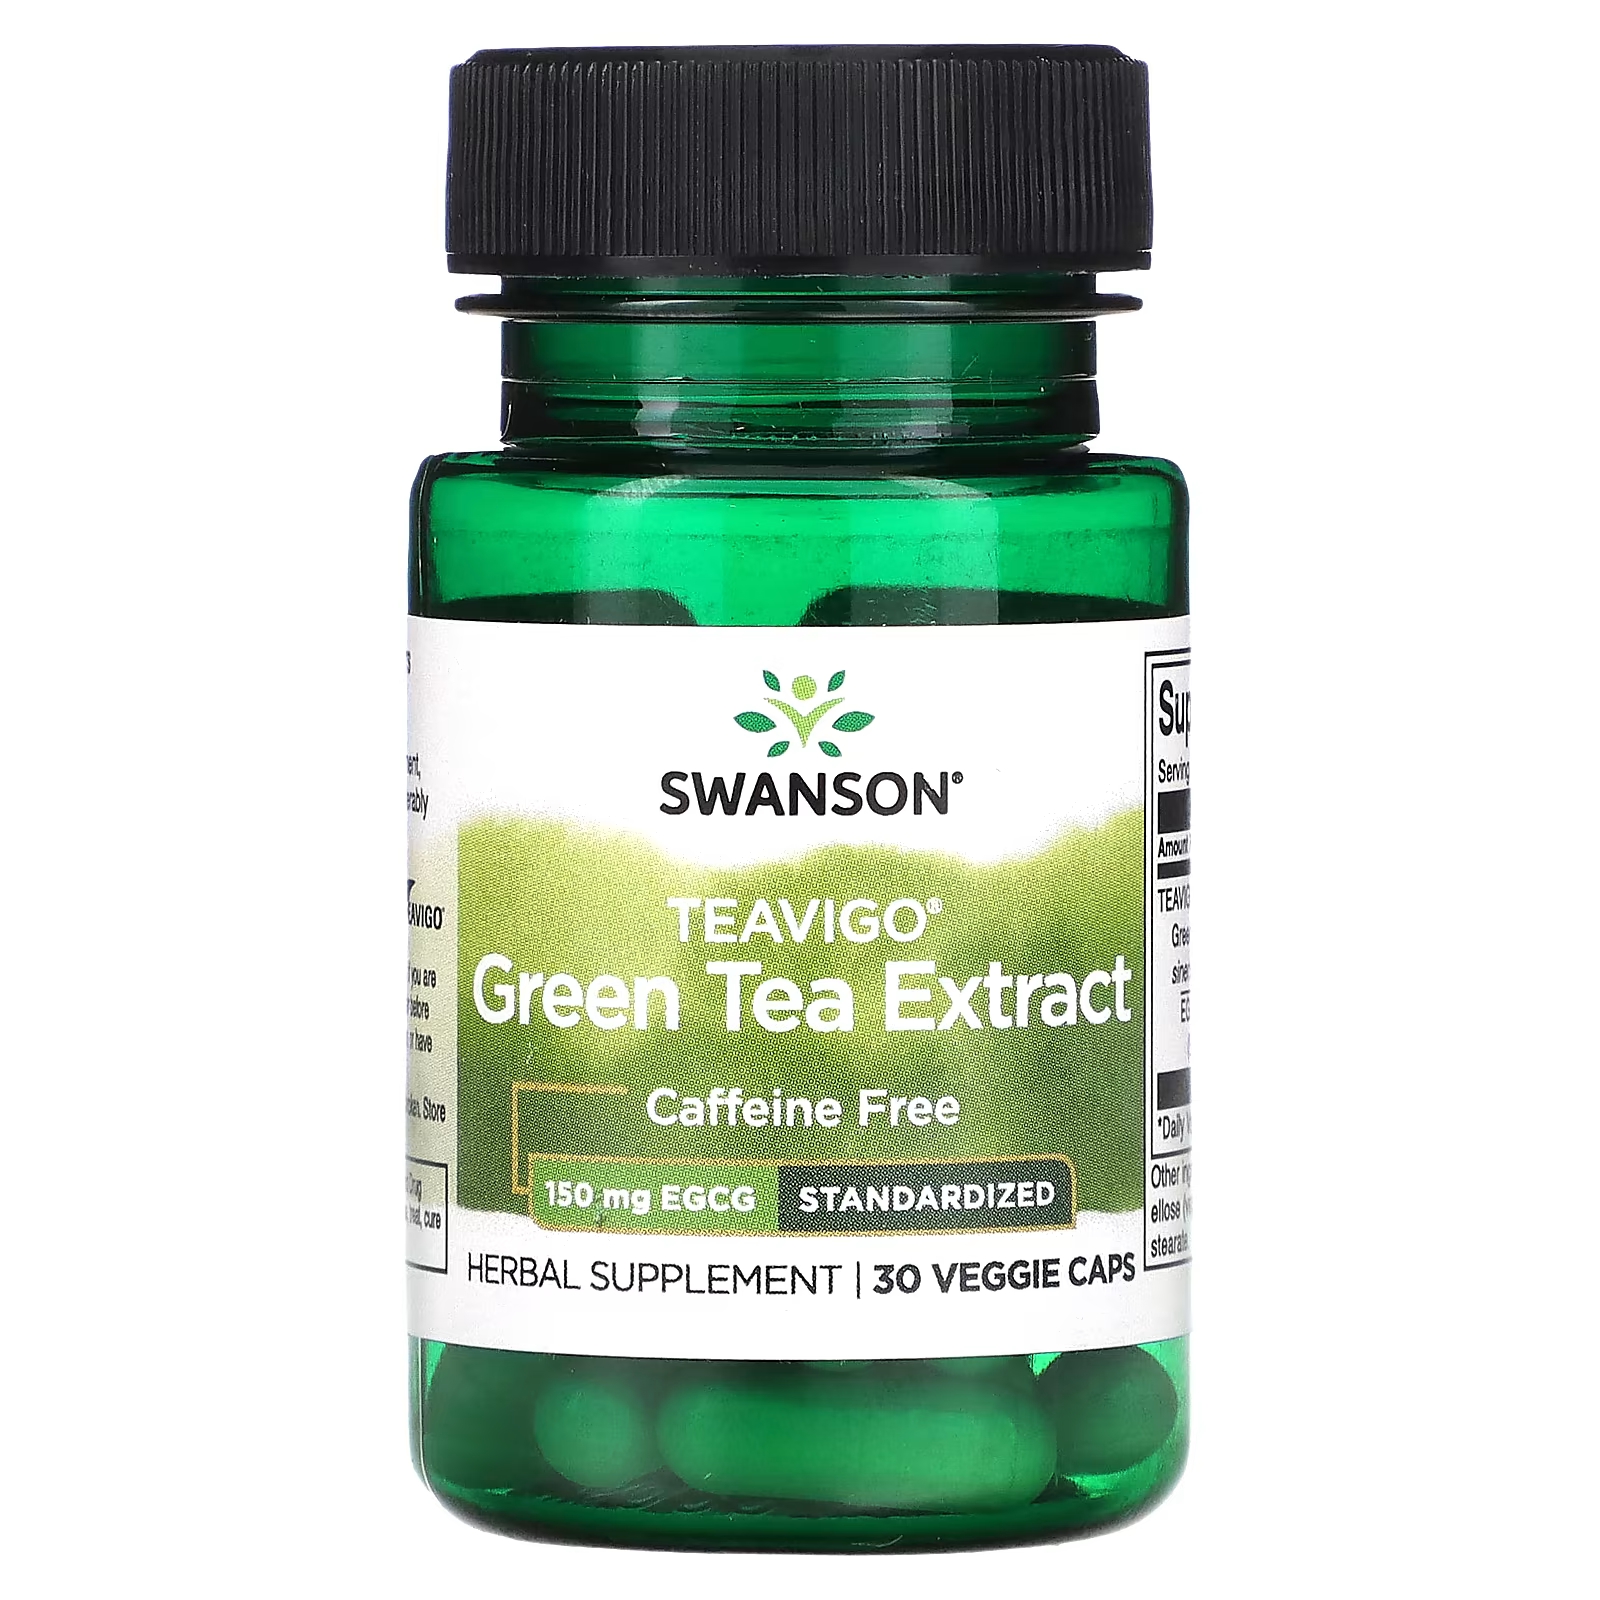 Пищевая добавка Swanson Экстракт зеленого чая Teavigo 150 мг, 30 растительных капсул swanson джимнема сильвестр стандартизированная 300 мг 120 капсул